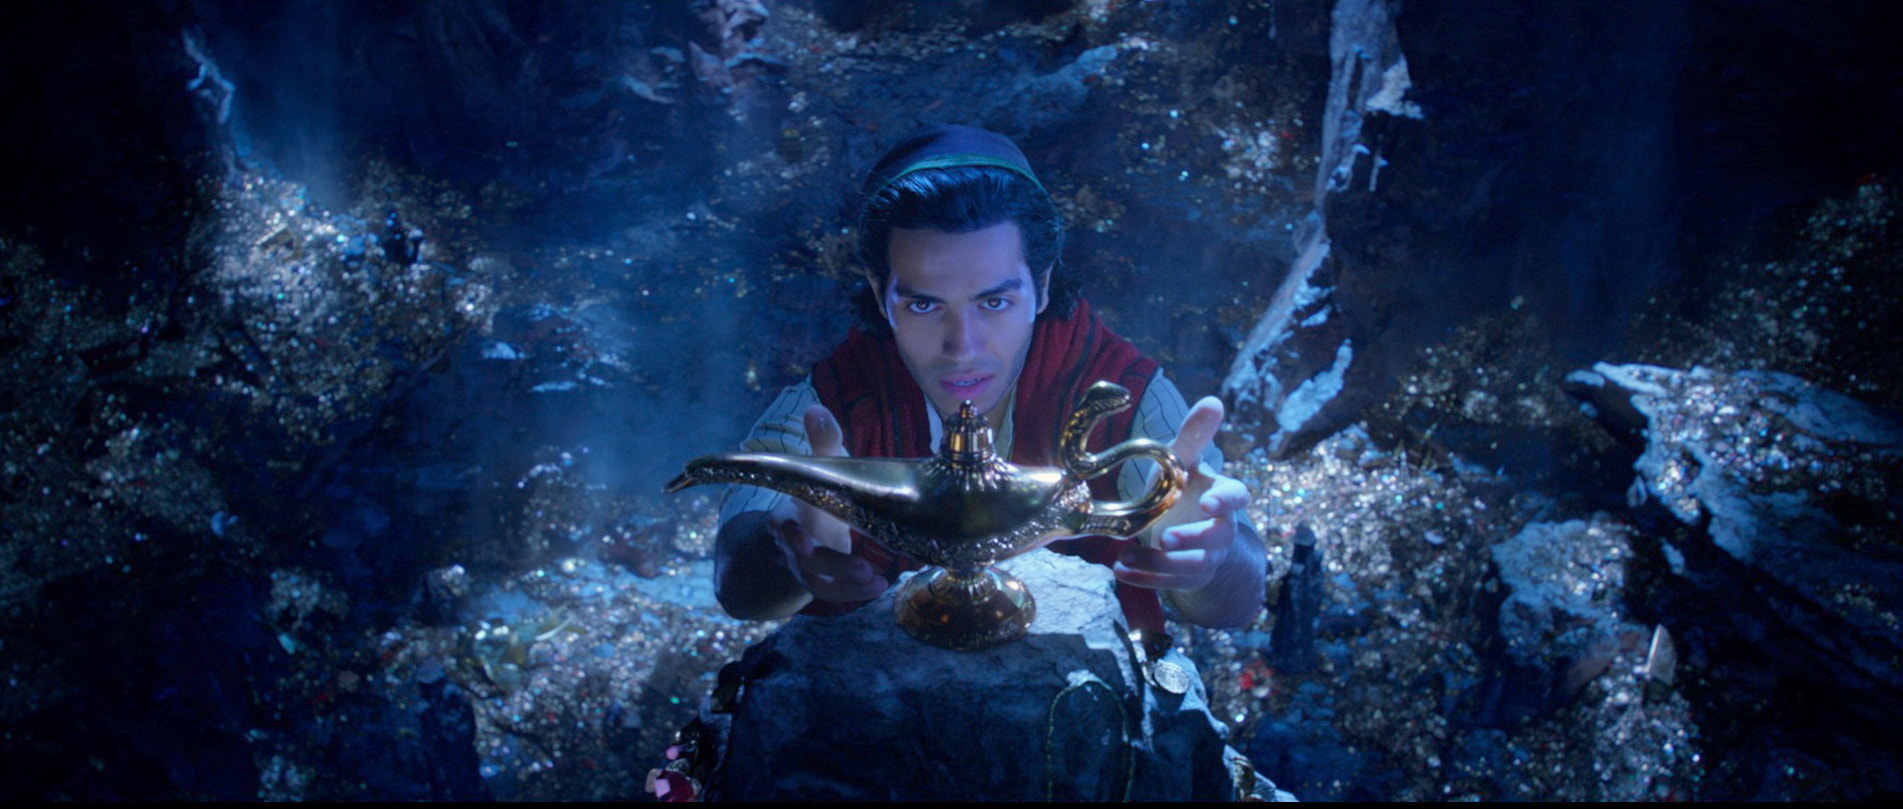 Aladdin: il trailer ufficiale del film di Guy Ritchie thumbnail